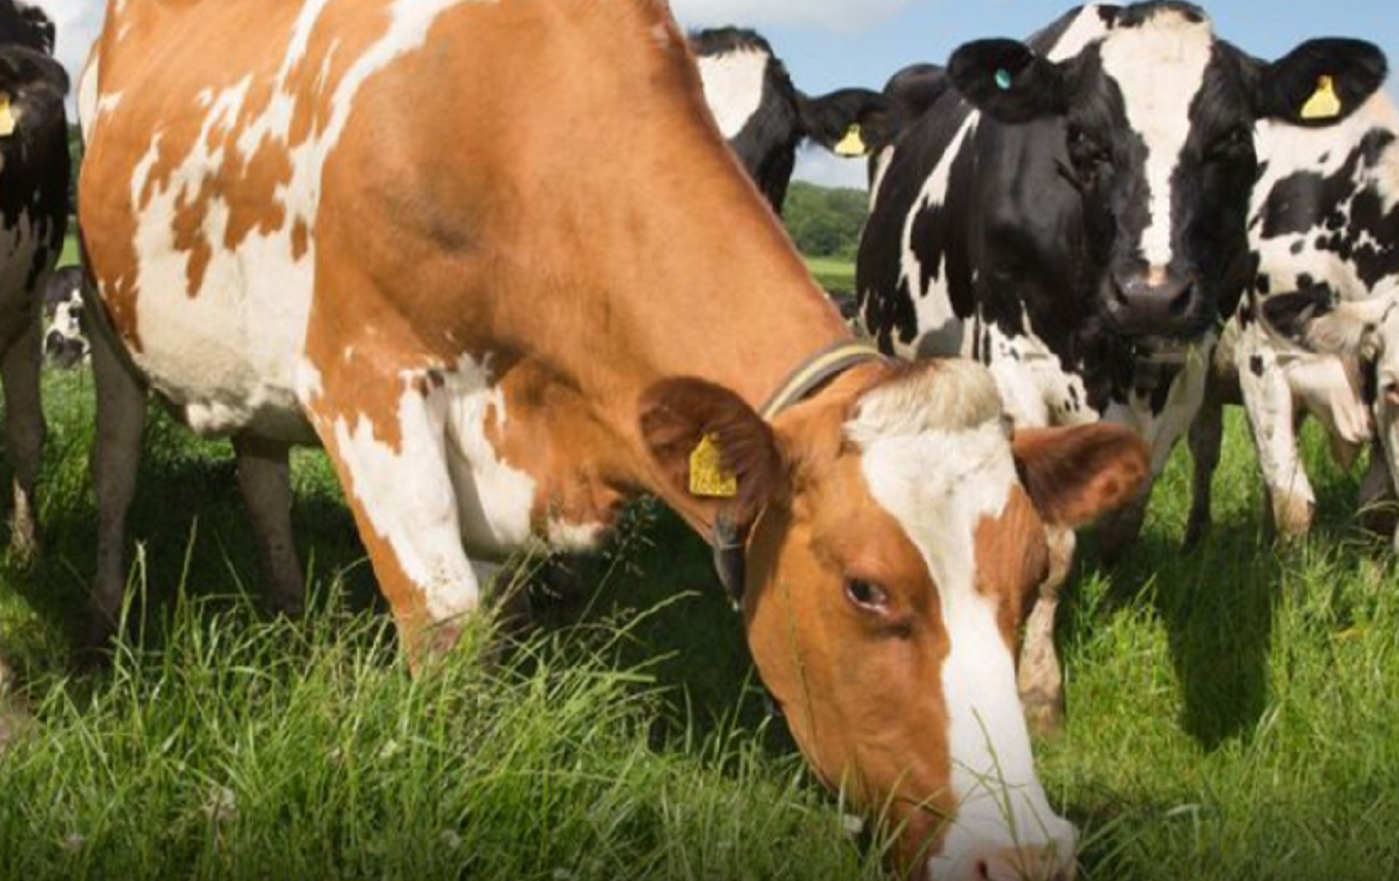 Παγκόσμια ανησυχία: Επιβεβαιώθηκε κρούσμα της νόσου των τρελών αγελάδων στη Σκωτία